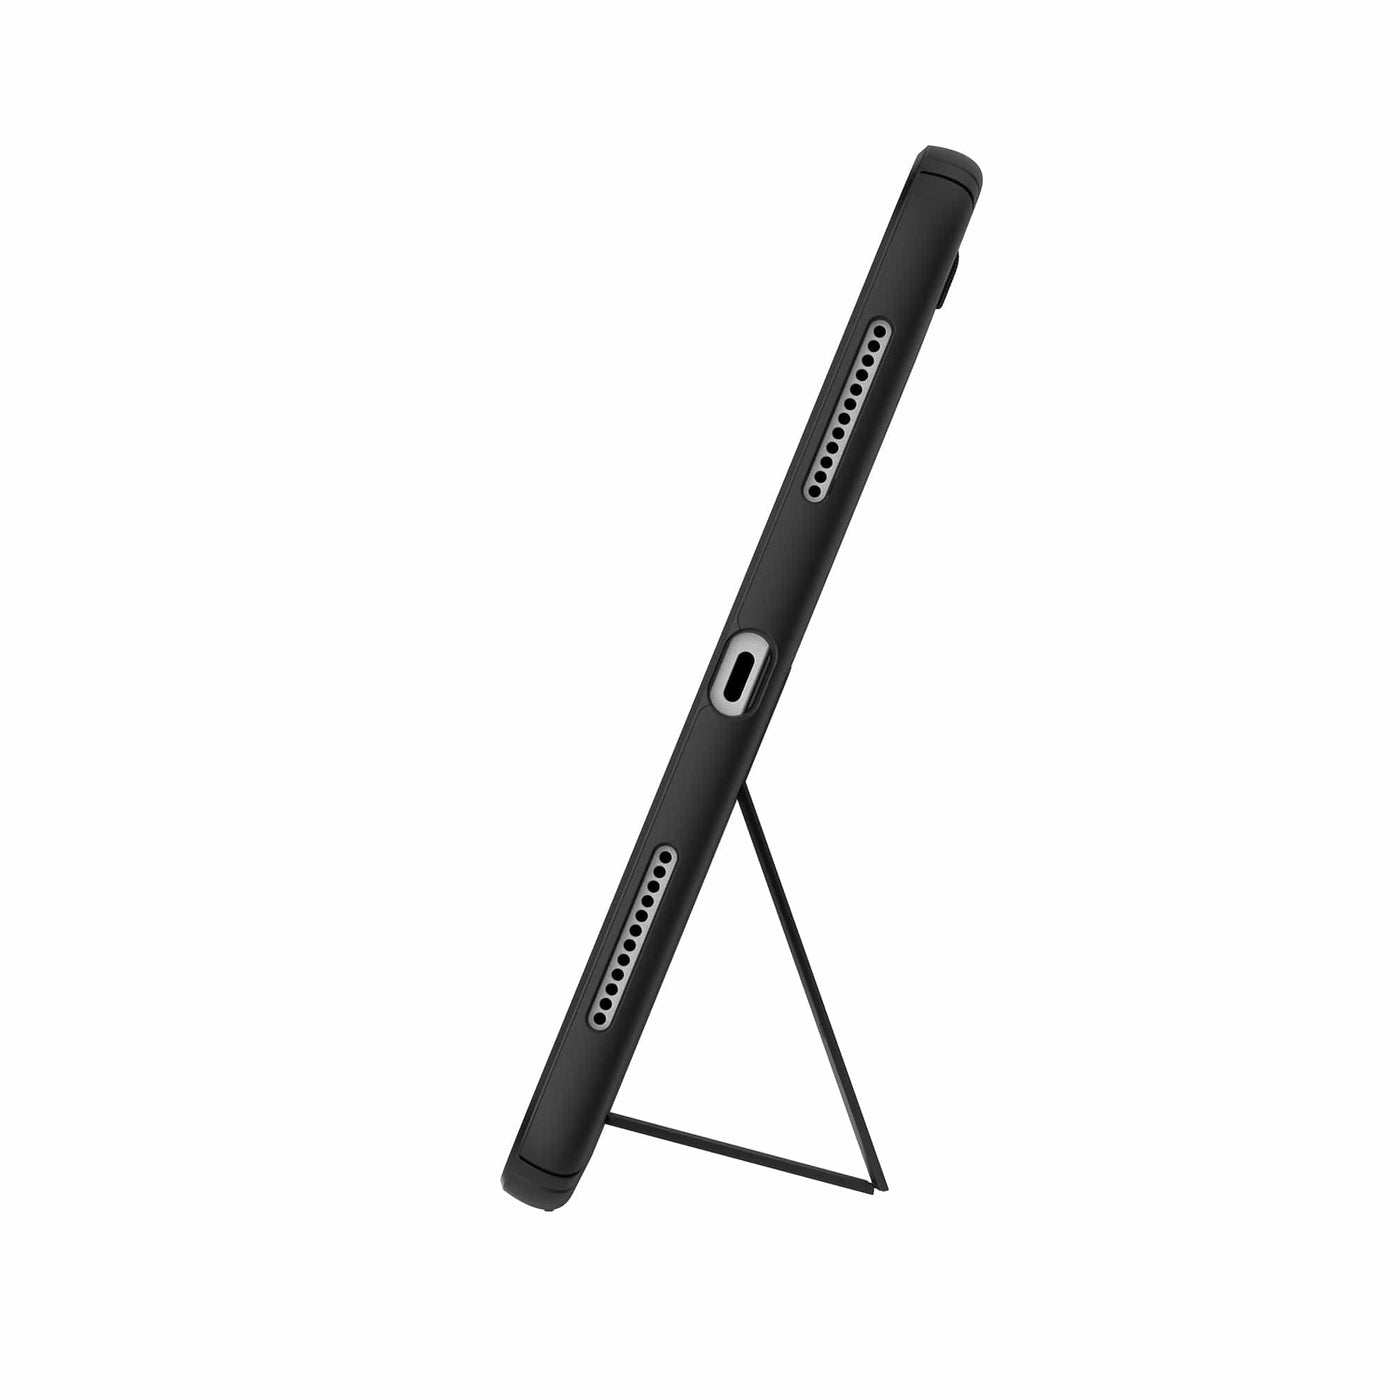 Speck StandyShell Google Pixel Tablet Cases Best Pixel Tablet - $49.99